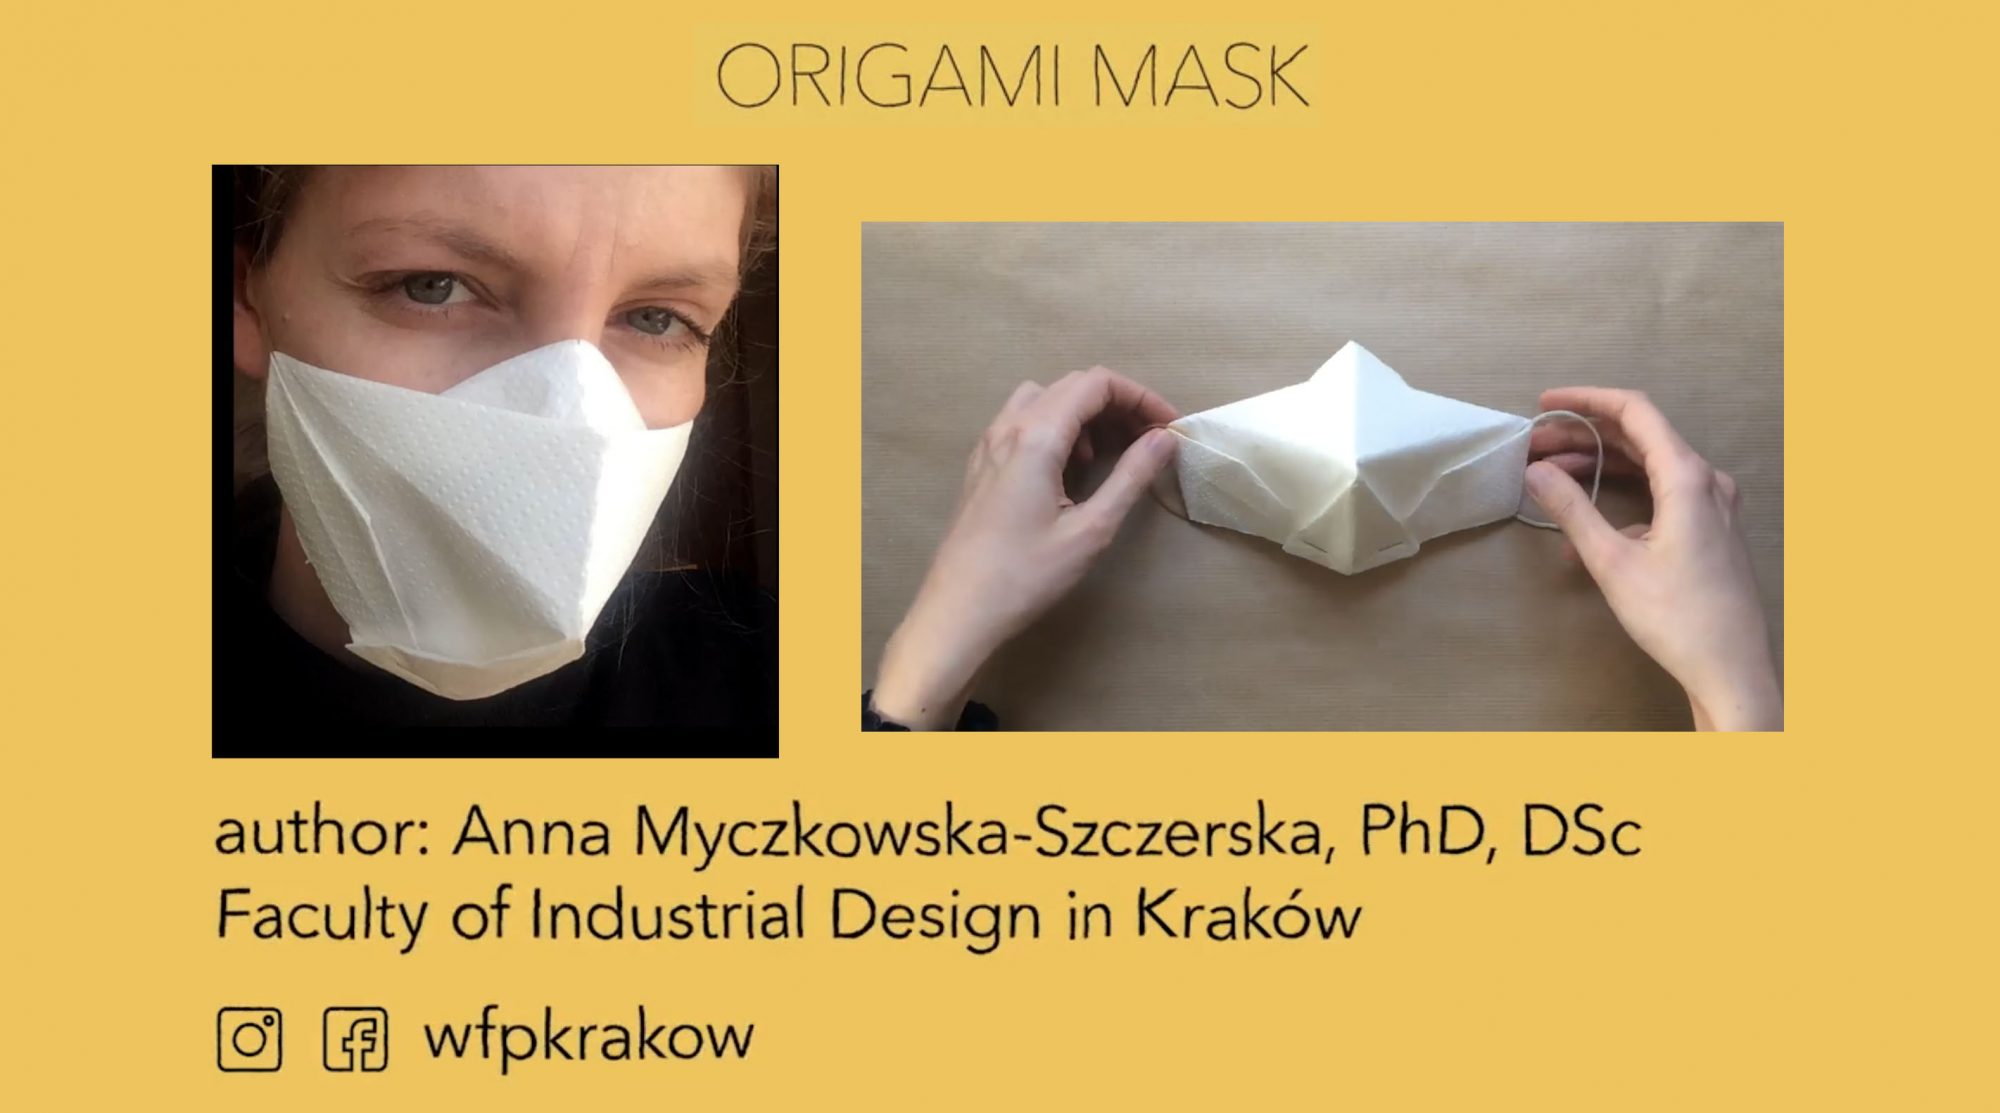 Origami Mask